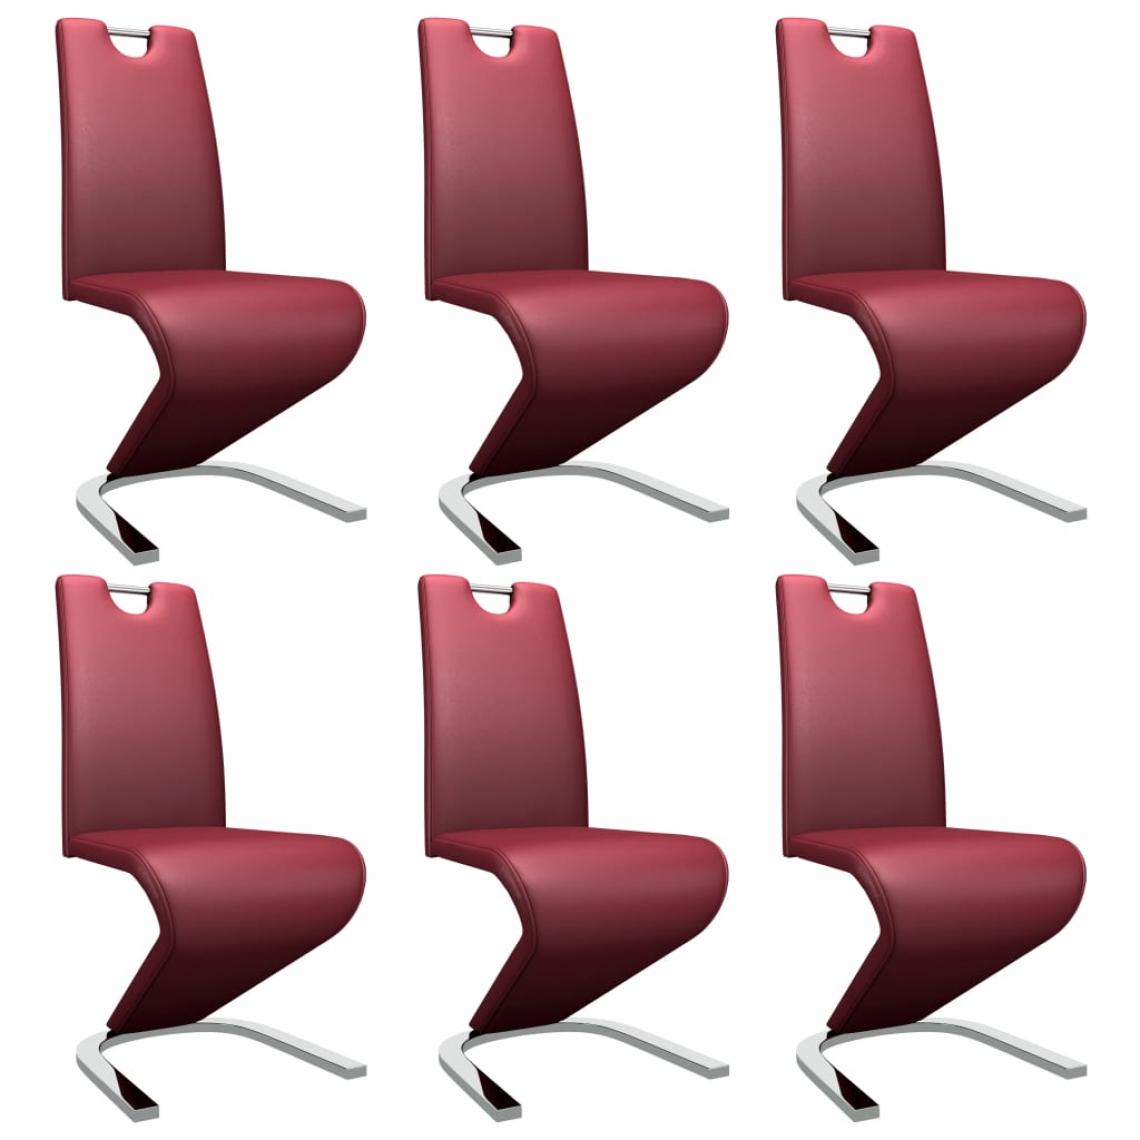 Decoshop26 - Lot de 6 chaises de salle à manger cuisine zigzag design contemporain similicuir rouge bordeaux CDS022946 - Chaises